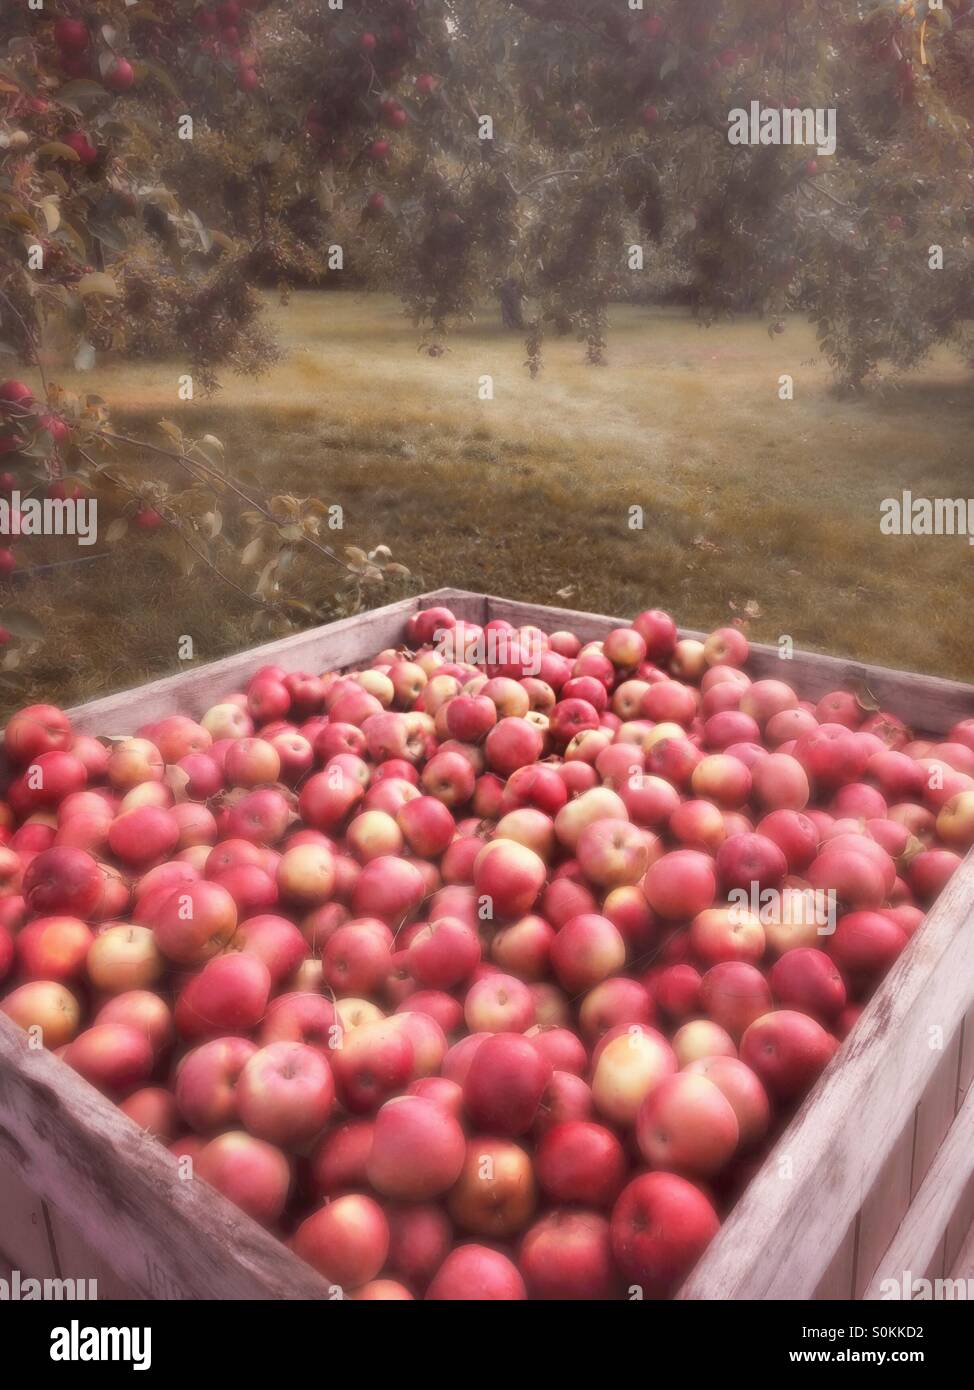 Harvest of apples, Berkshires region, Massachusetts, USA Stock Photo